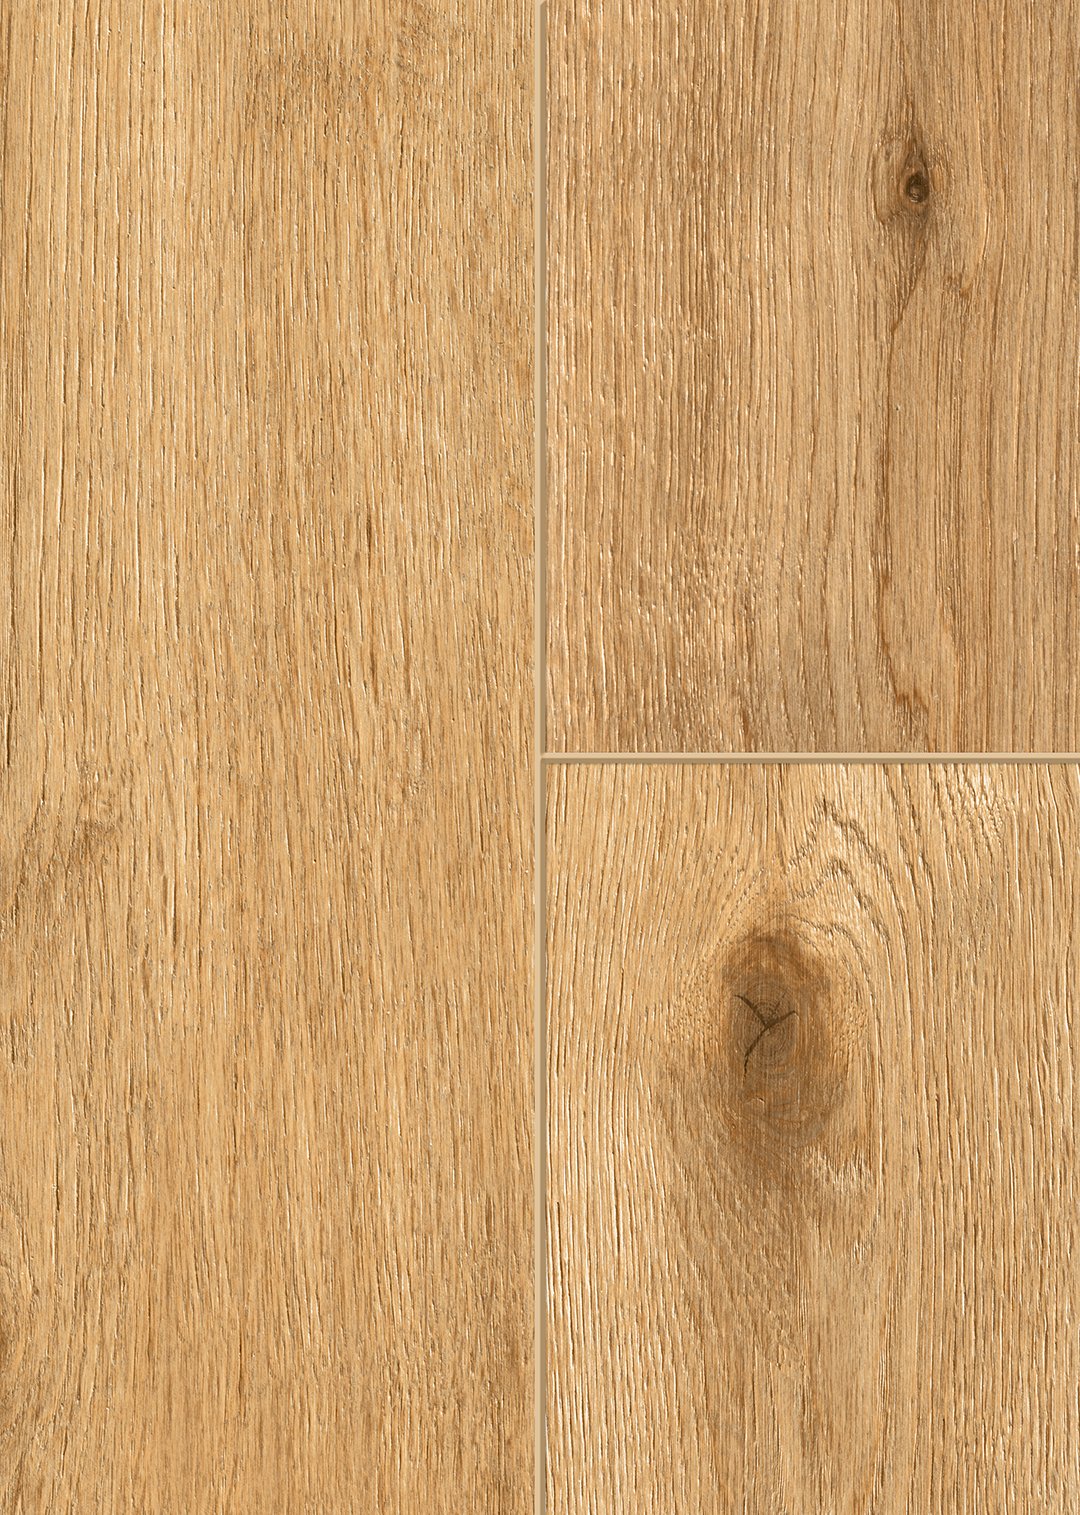 SPC vinilinės grindys GREEN VINYL 55516, netašyto ąžuolo sp., 1290 x 203 x 4 mm, 32/AC4 - 2